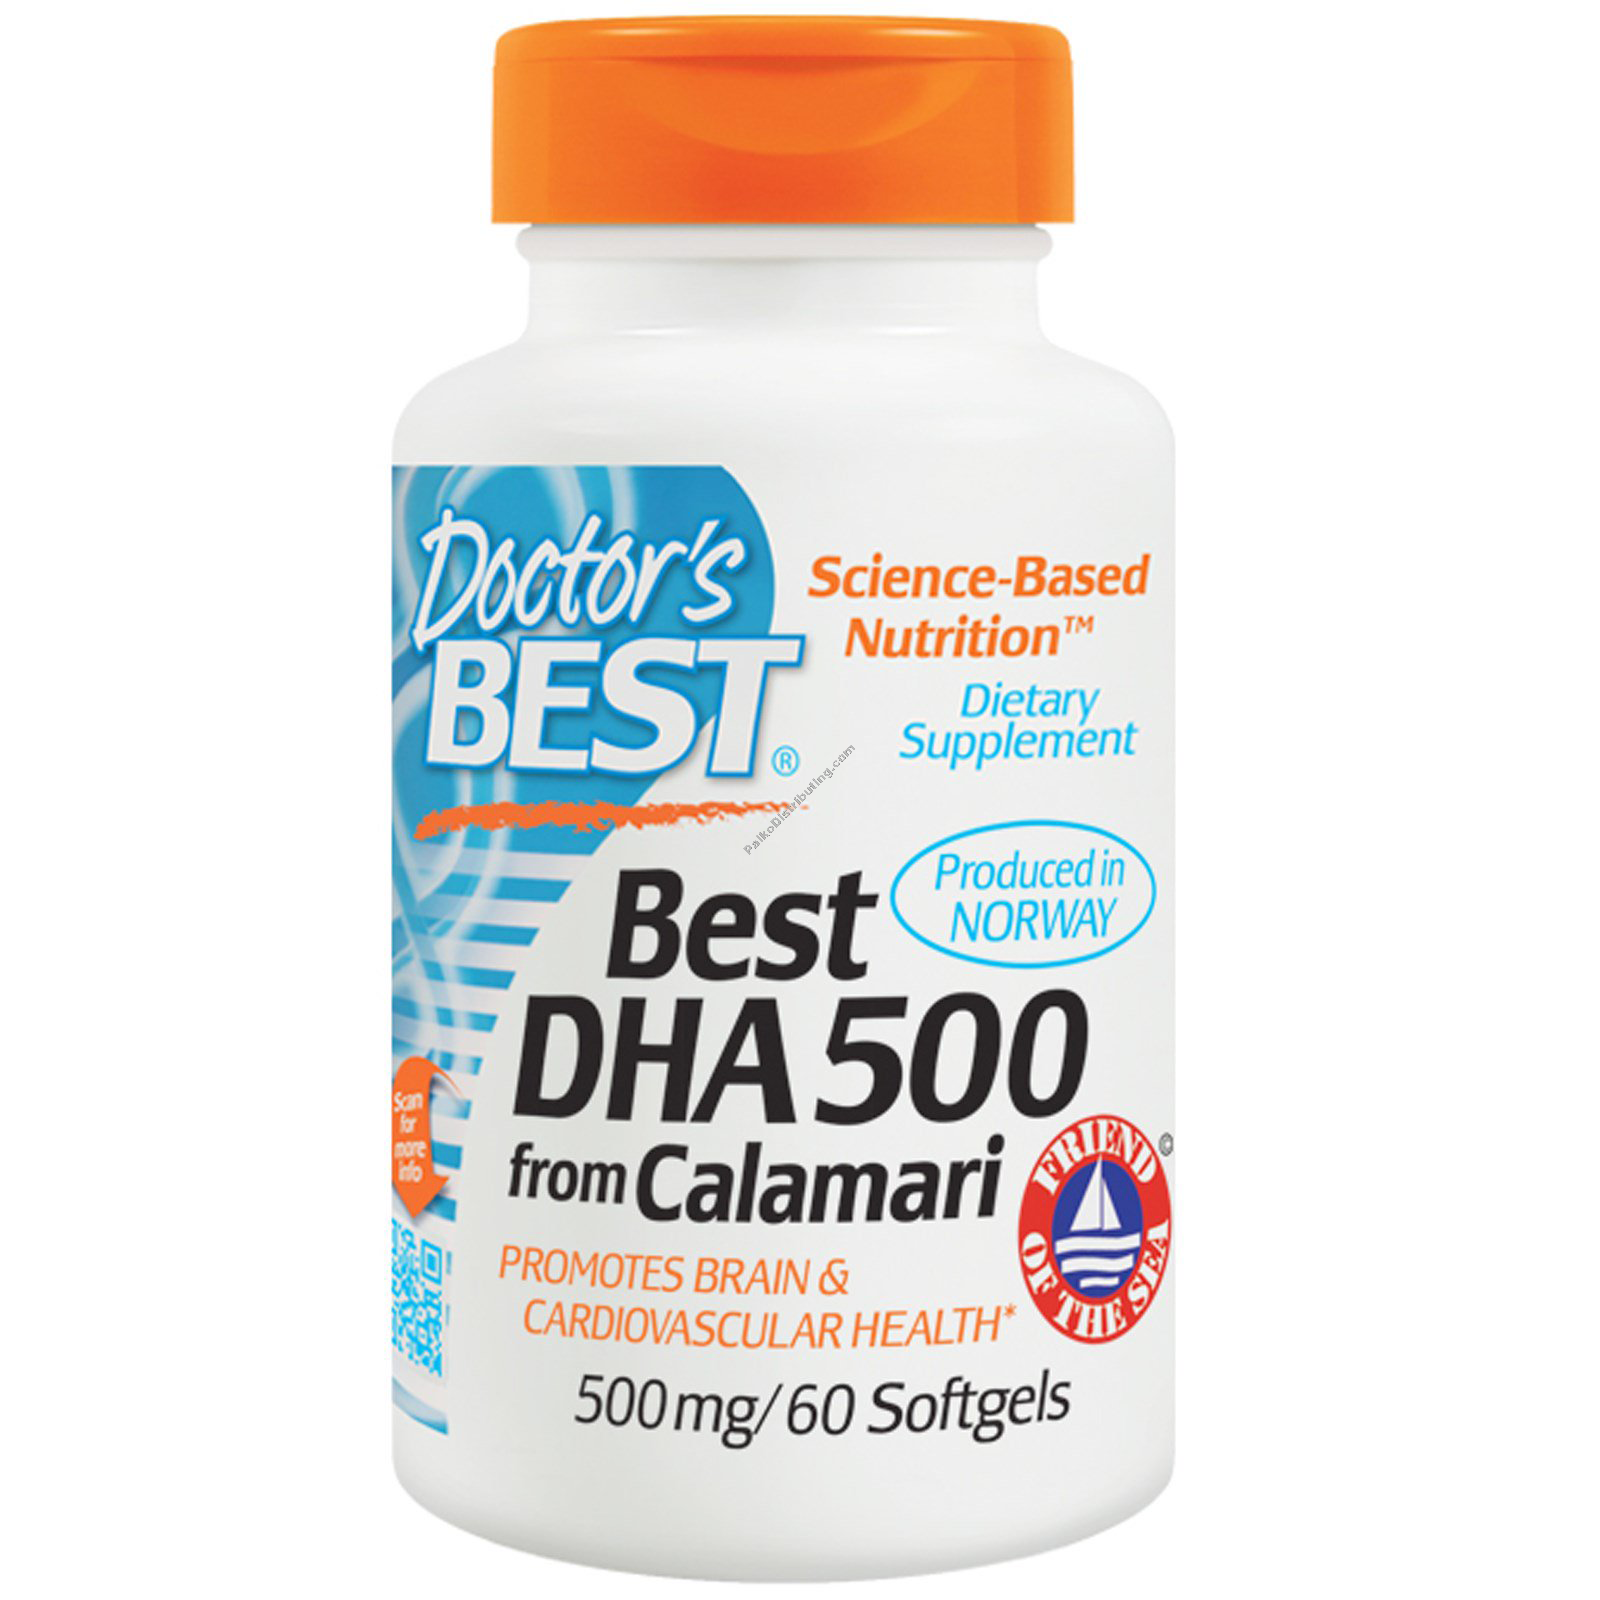 Product Image: DHA 500 from Calamari